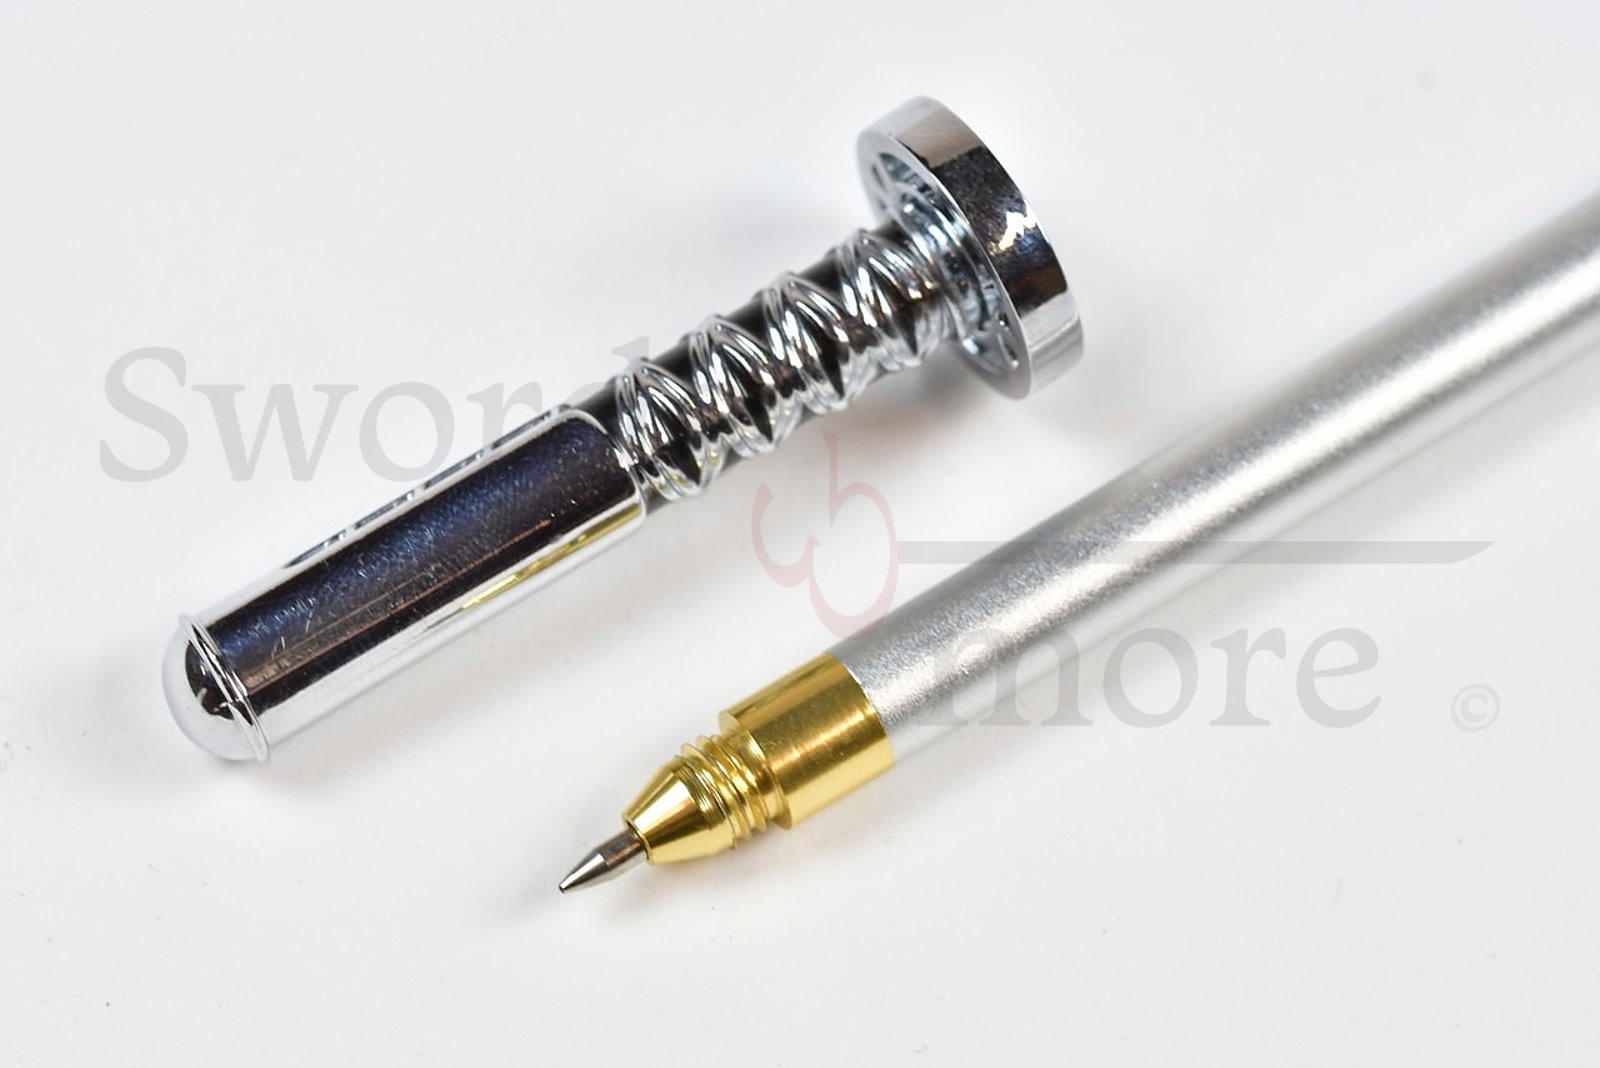 Bleach – Kuchiki Rukia Kugelschreiber Schwert, Miniaturschwert mit Stifthalter 